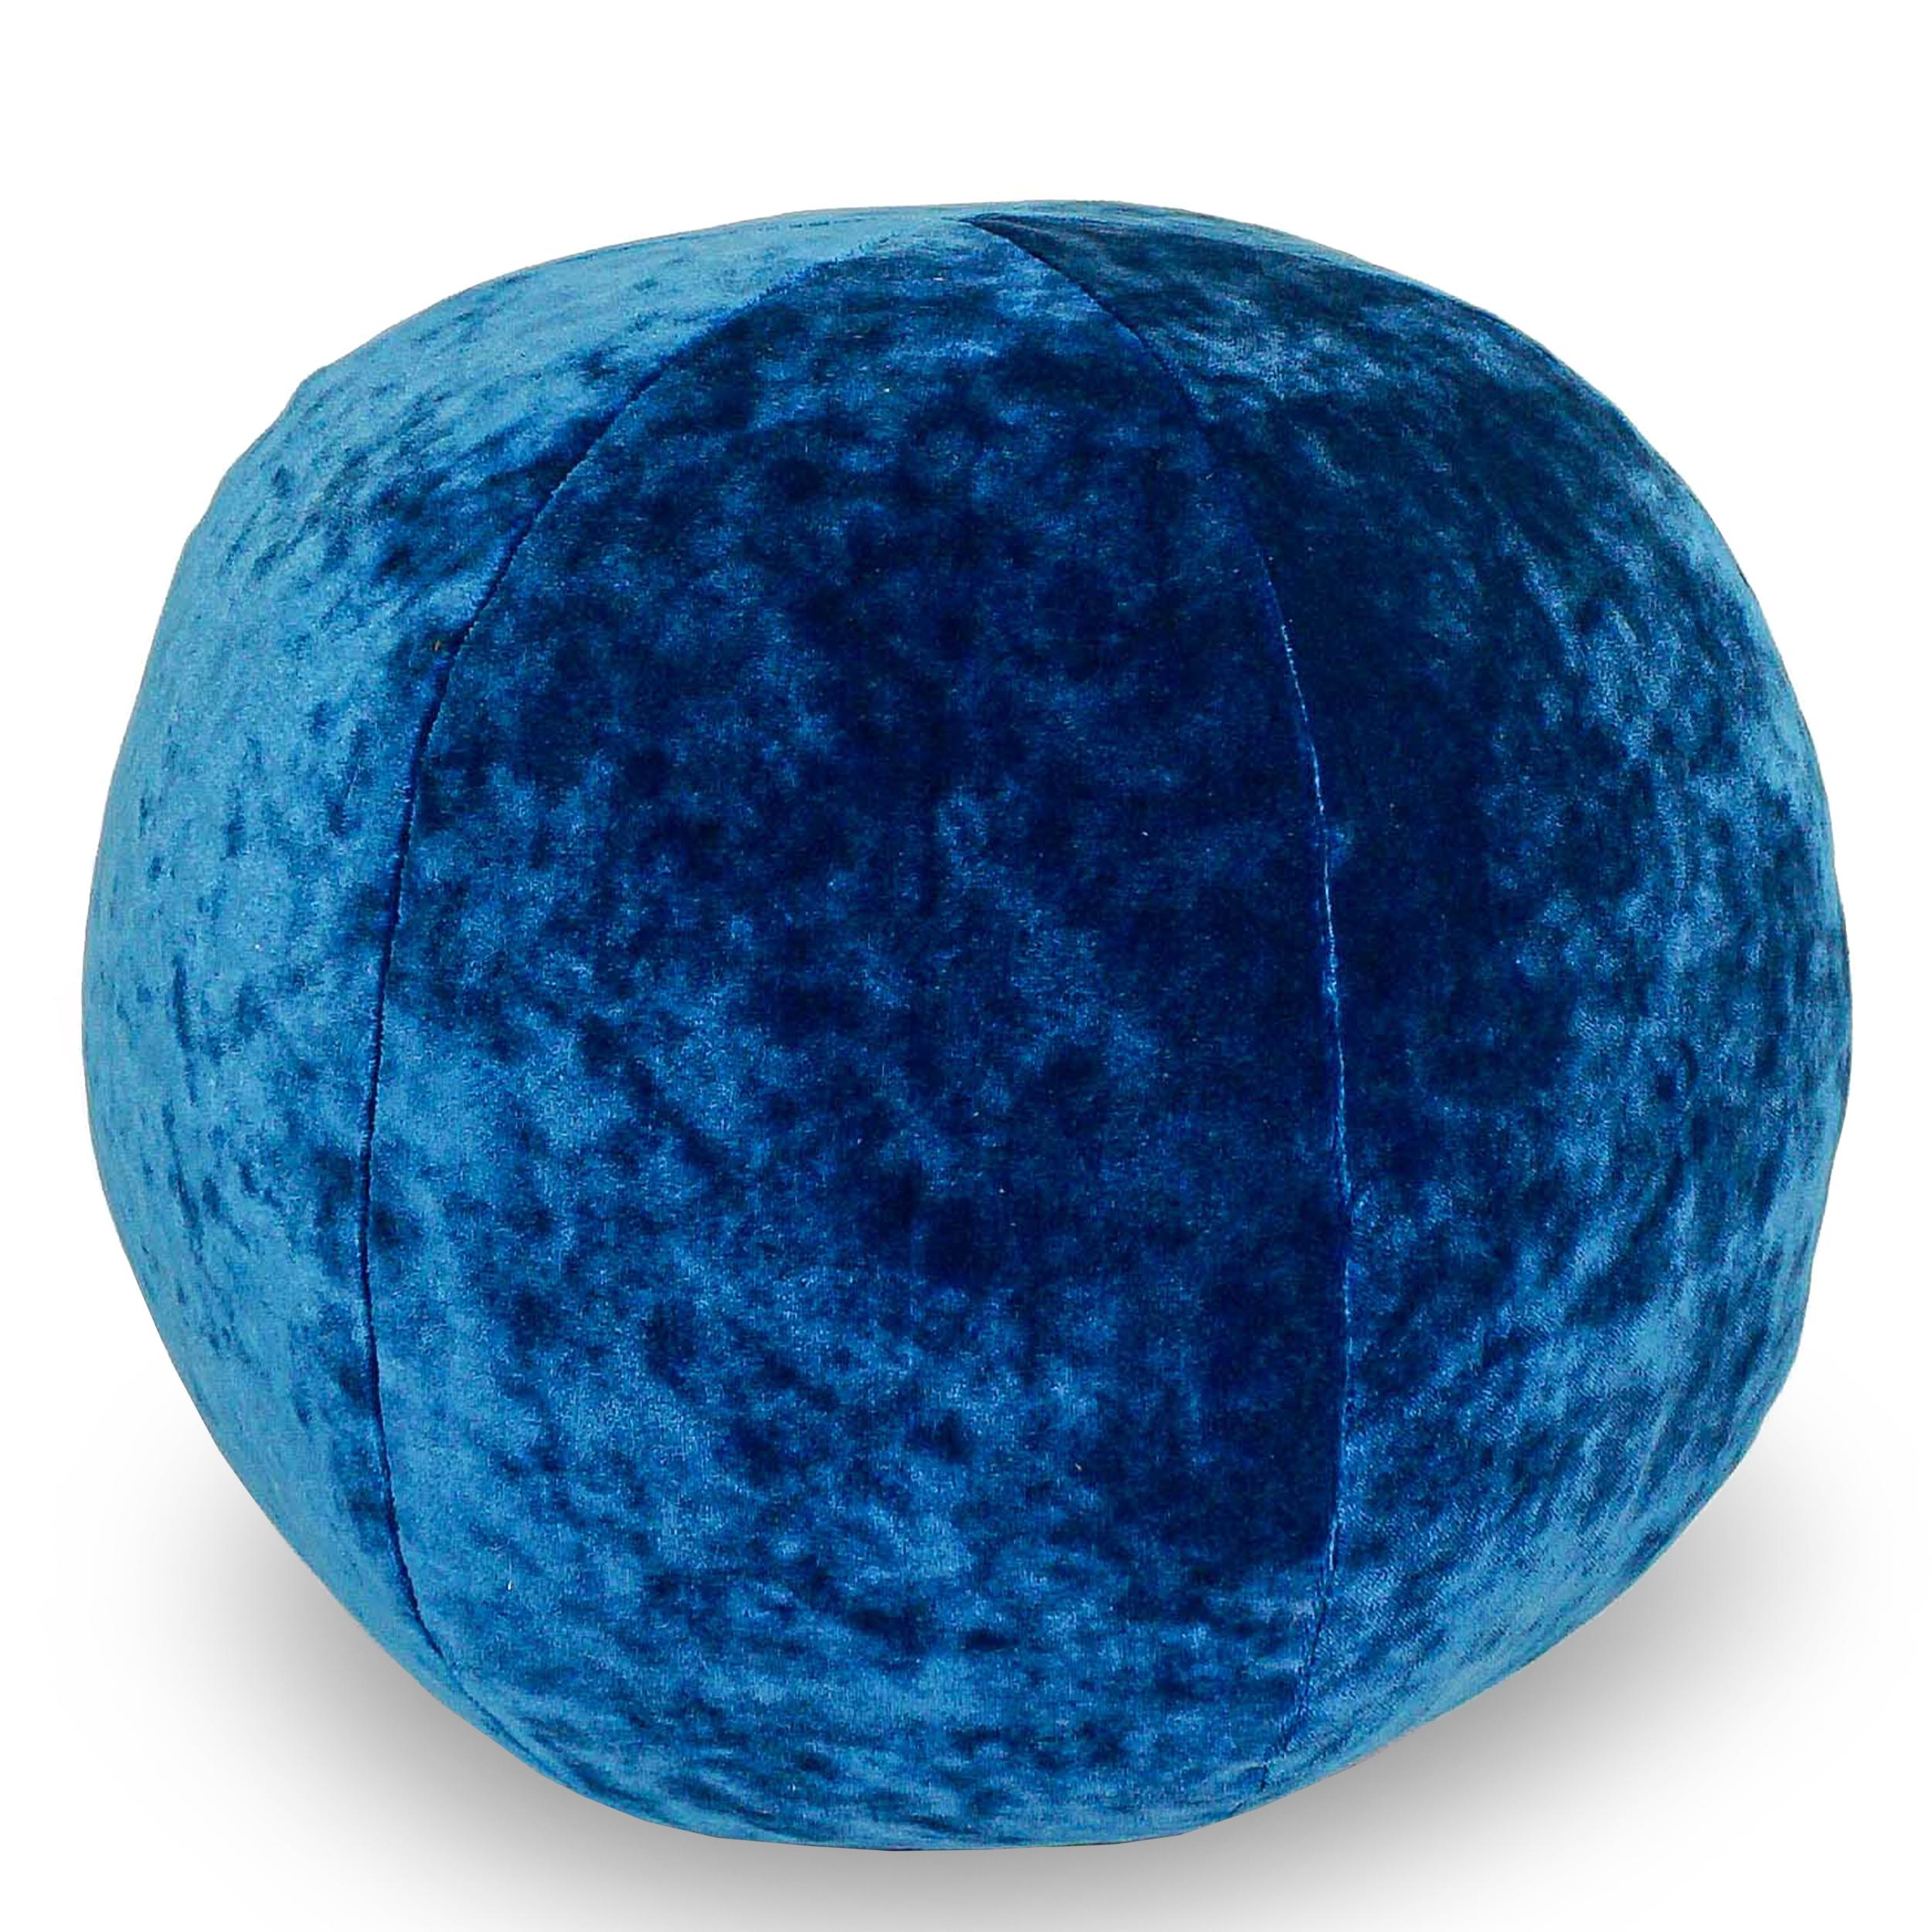 Oreiller boule en velours écrasé bleu électrique. La taille et le tissu peuvent être personnalisés.

Mesures :
Extérieur : 12